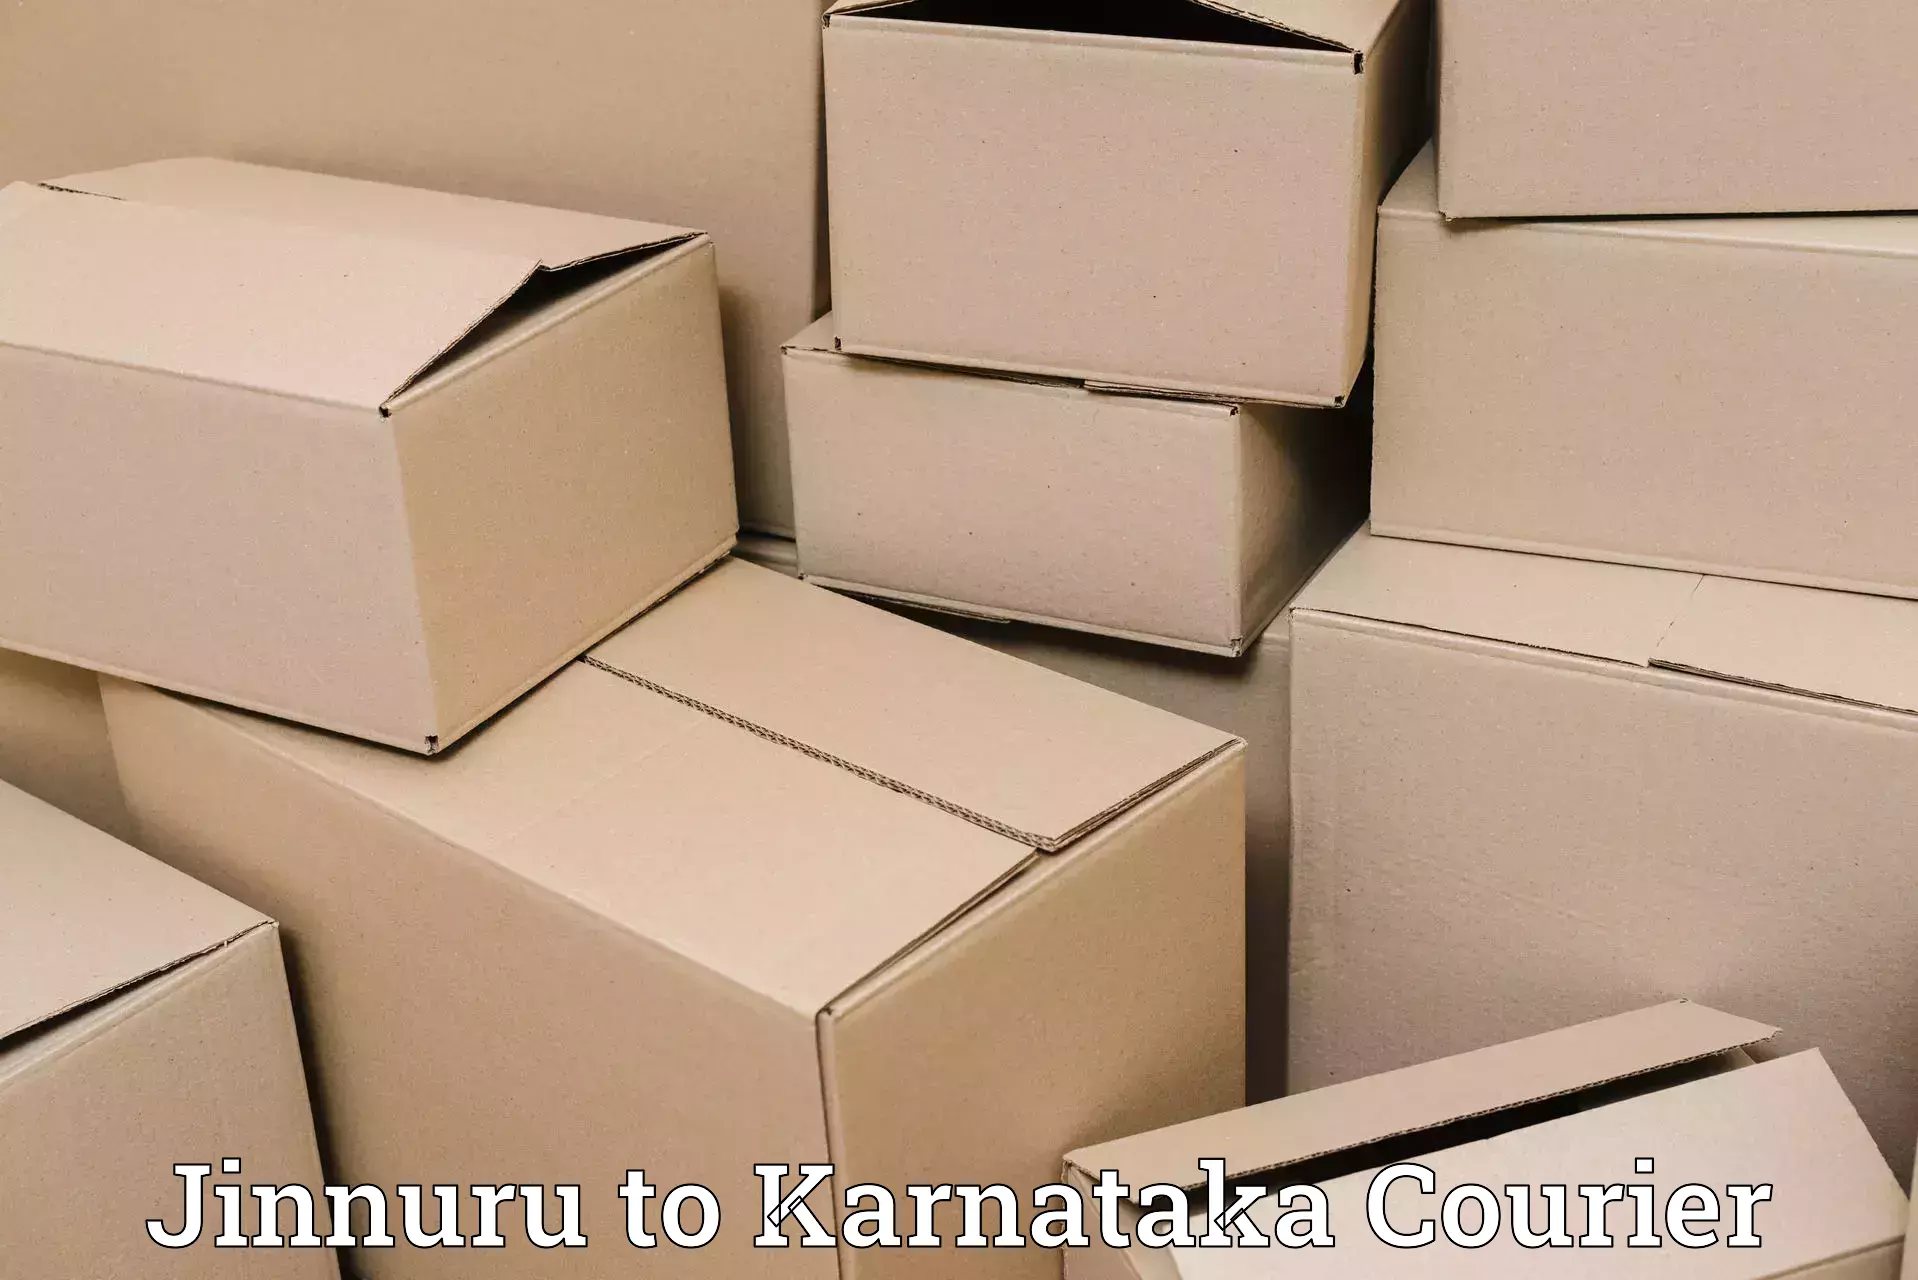 Efficient cargo handling in Jinnuru to Puttur